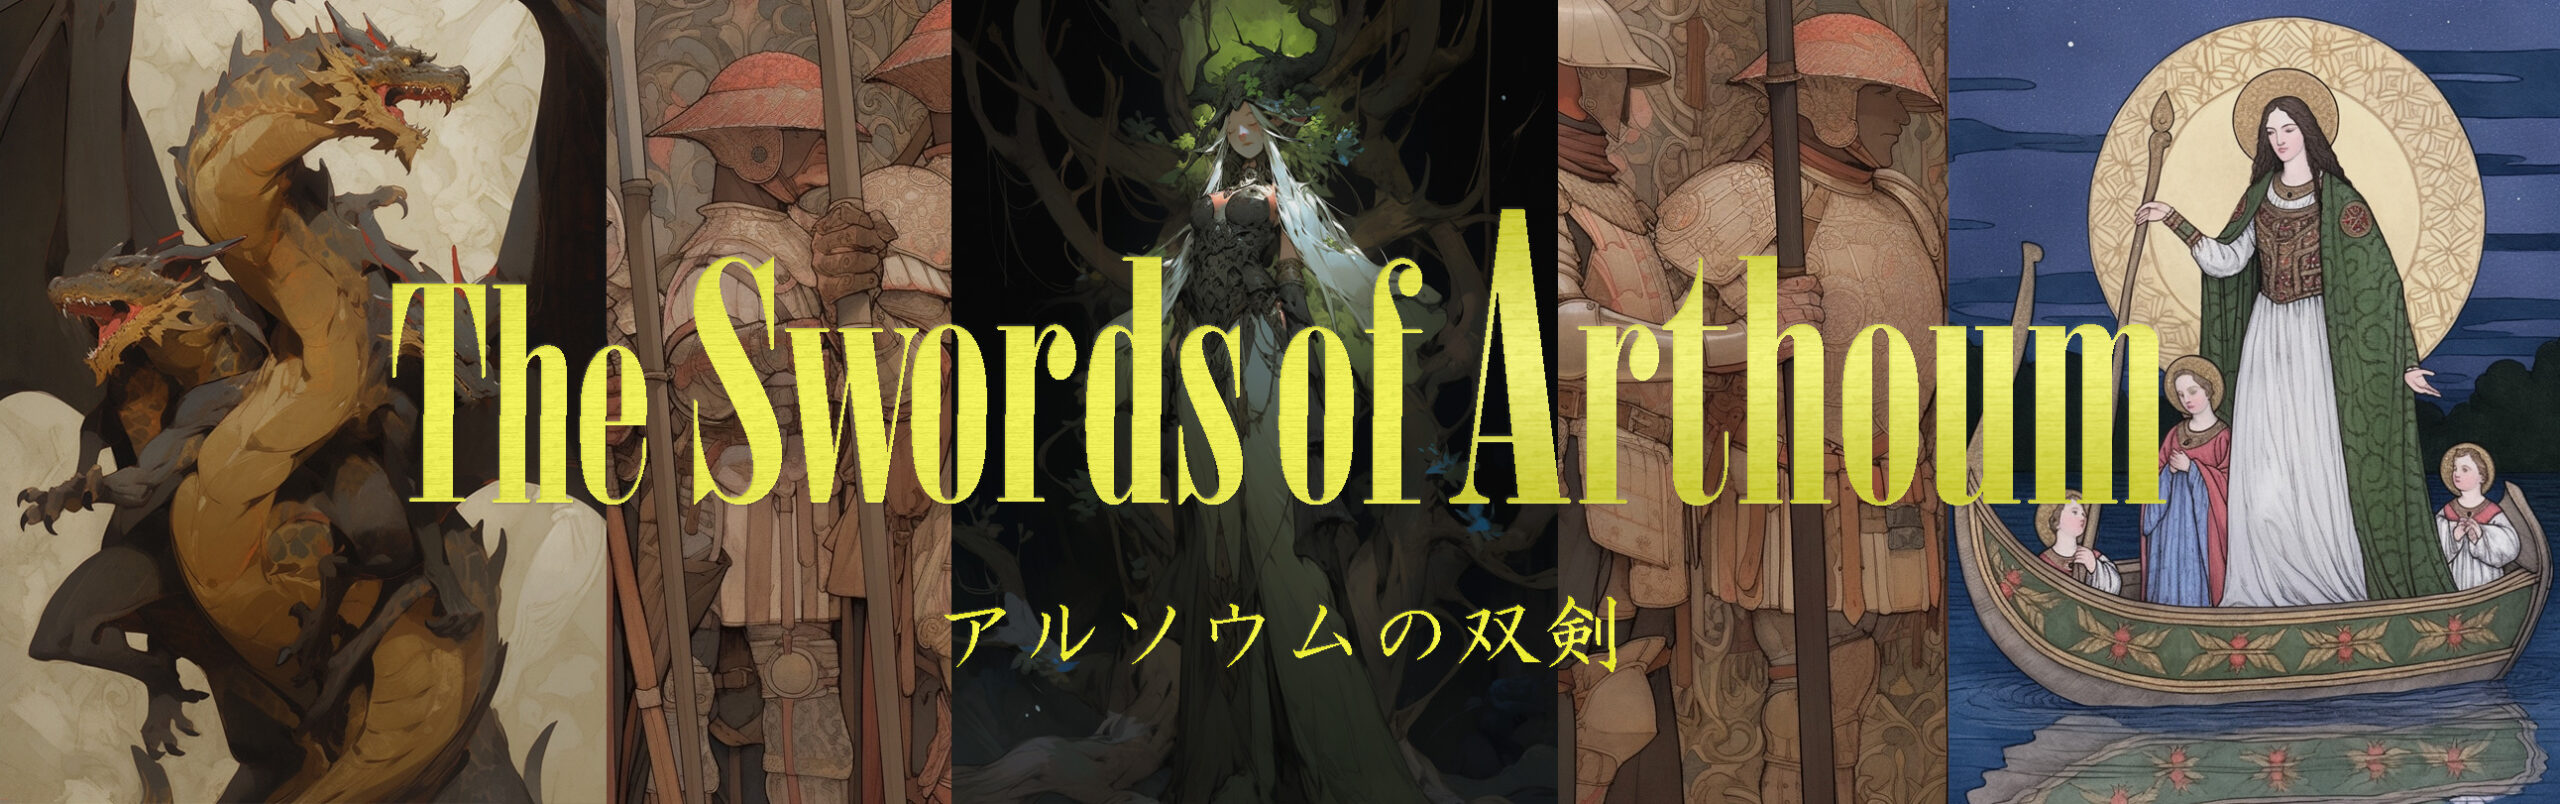 The Swords of Arthoum Official Site